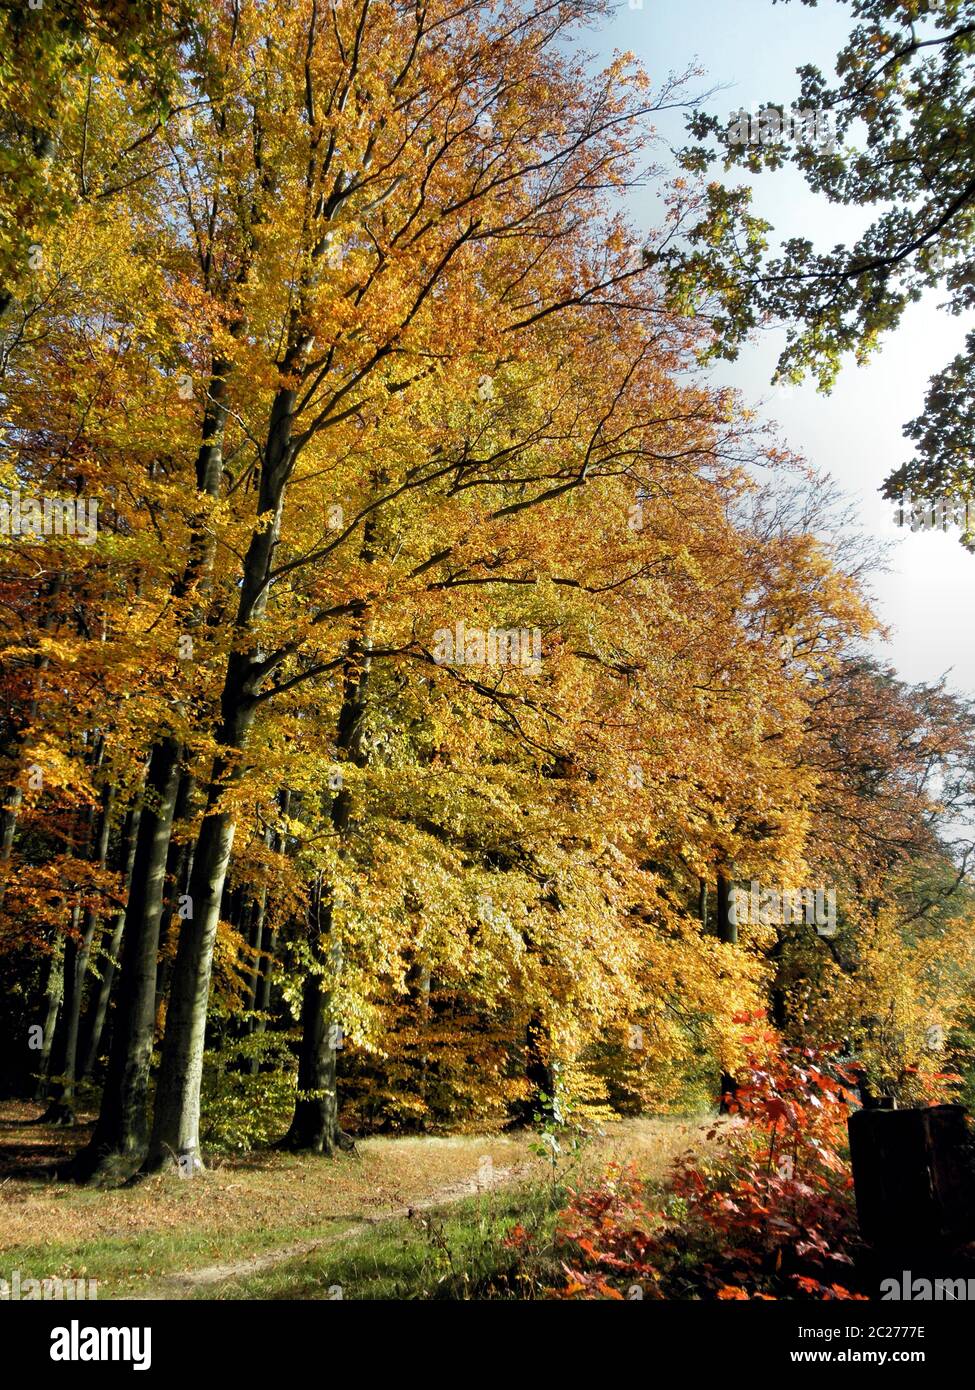 Ein Weg am Rand eines bunten Herbstwaldes; sonniger Tag EIN Weg am Rande eines bunten Herbstwaldes, sonniger Herbsttag Stockfoto